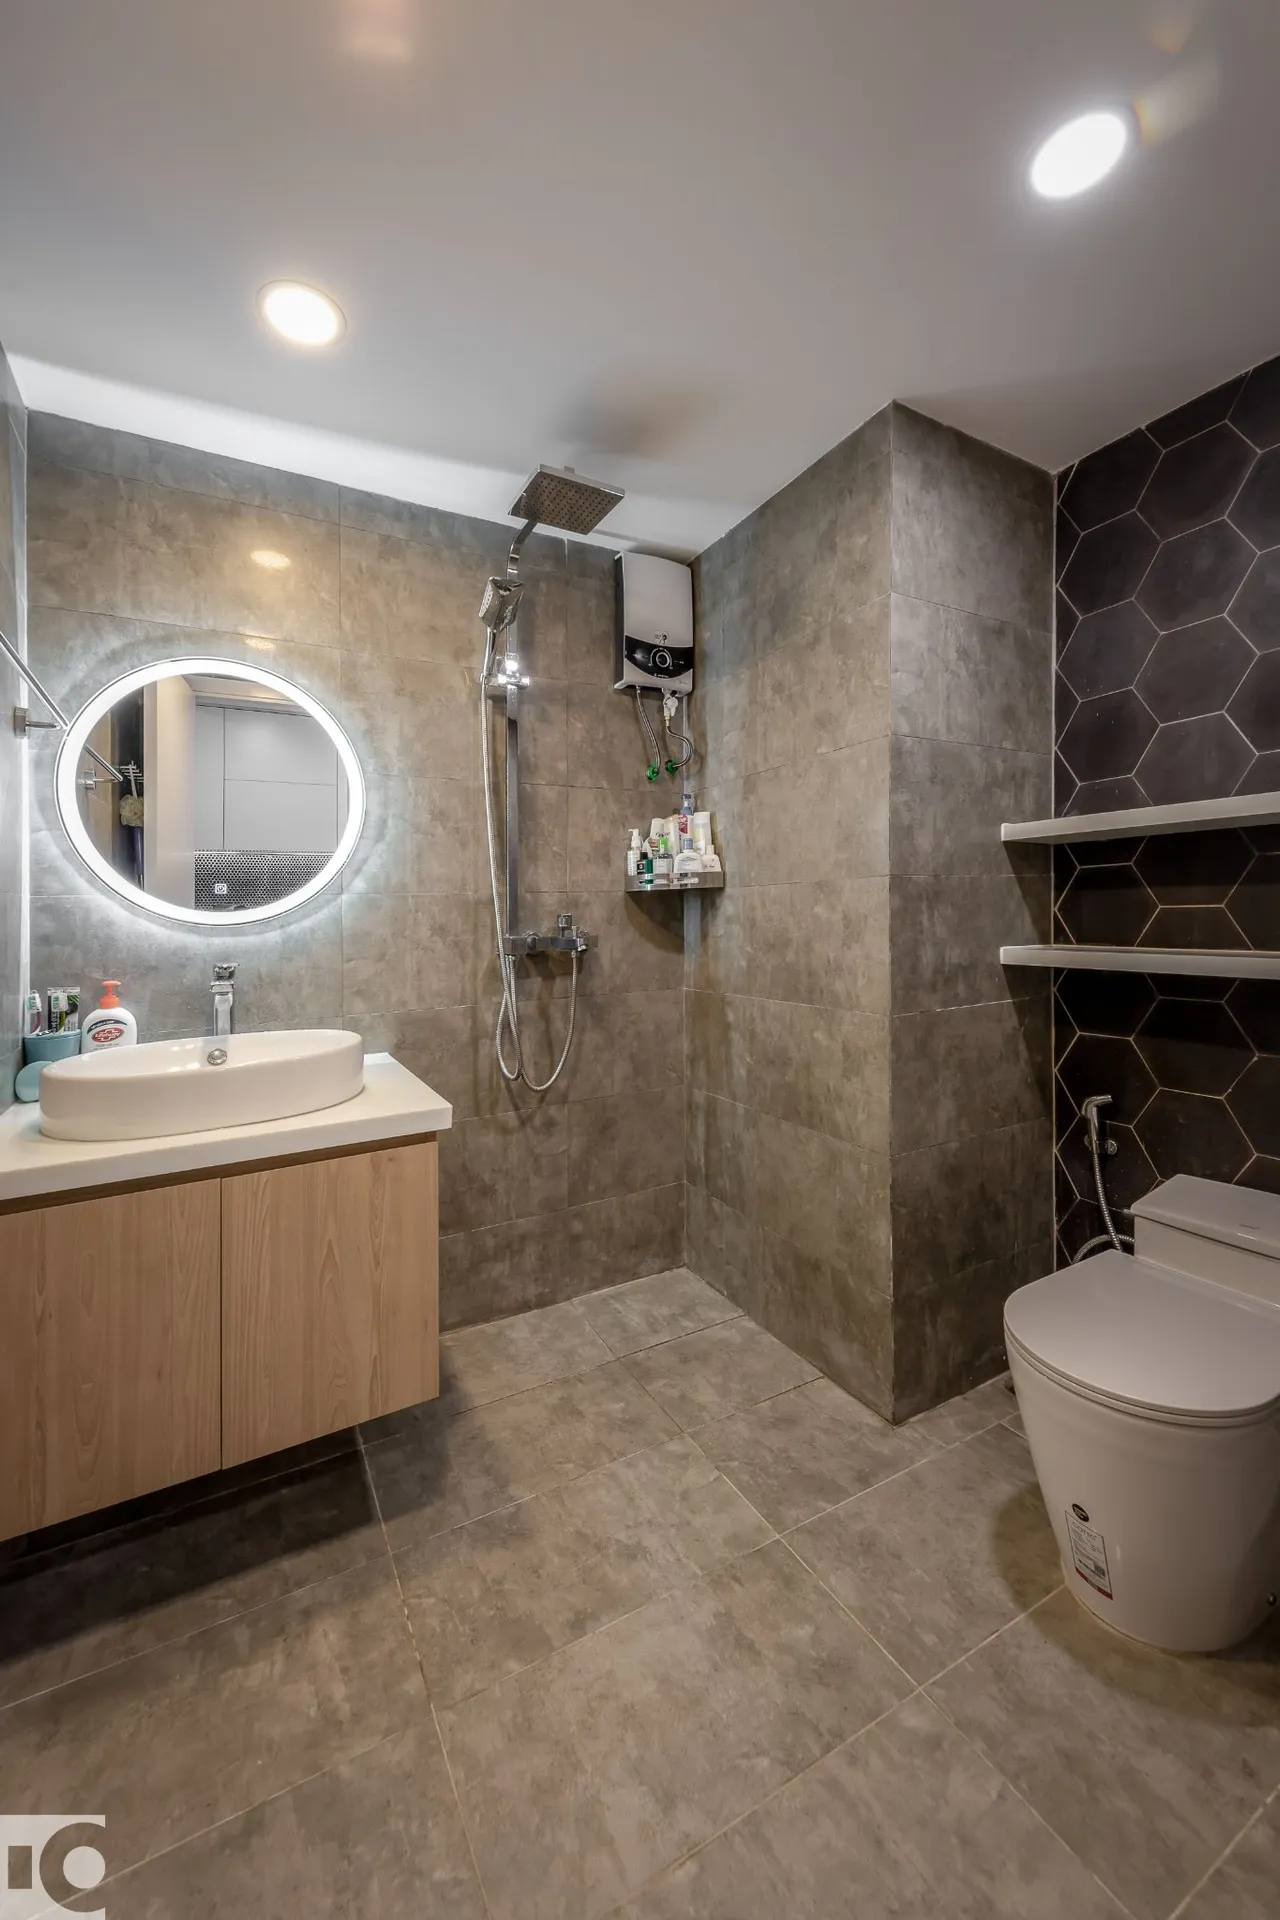 Hoàn thiện nội thất phòng tắm, nhà vệ sinh Căn hộ chung cư An Lộc phong cách Tối giản Minimalist